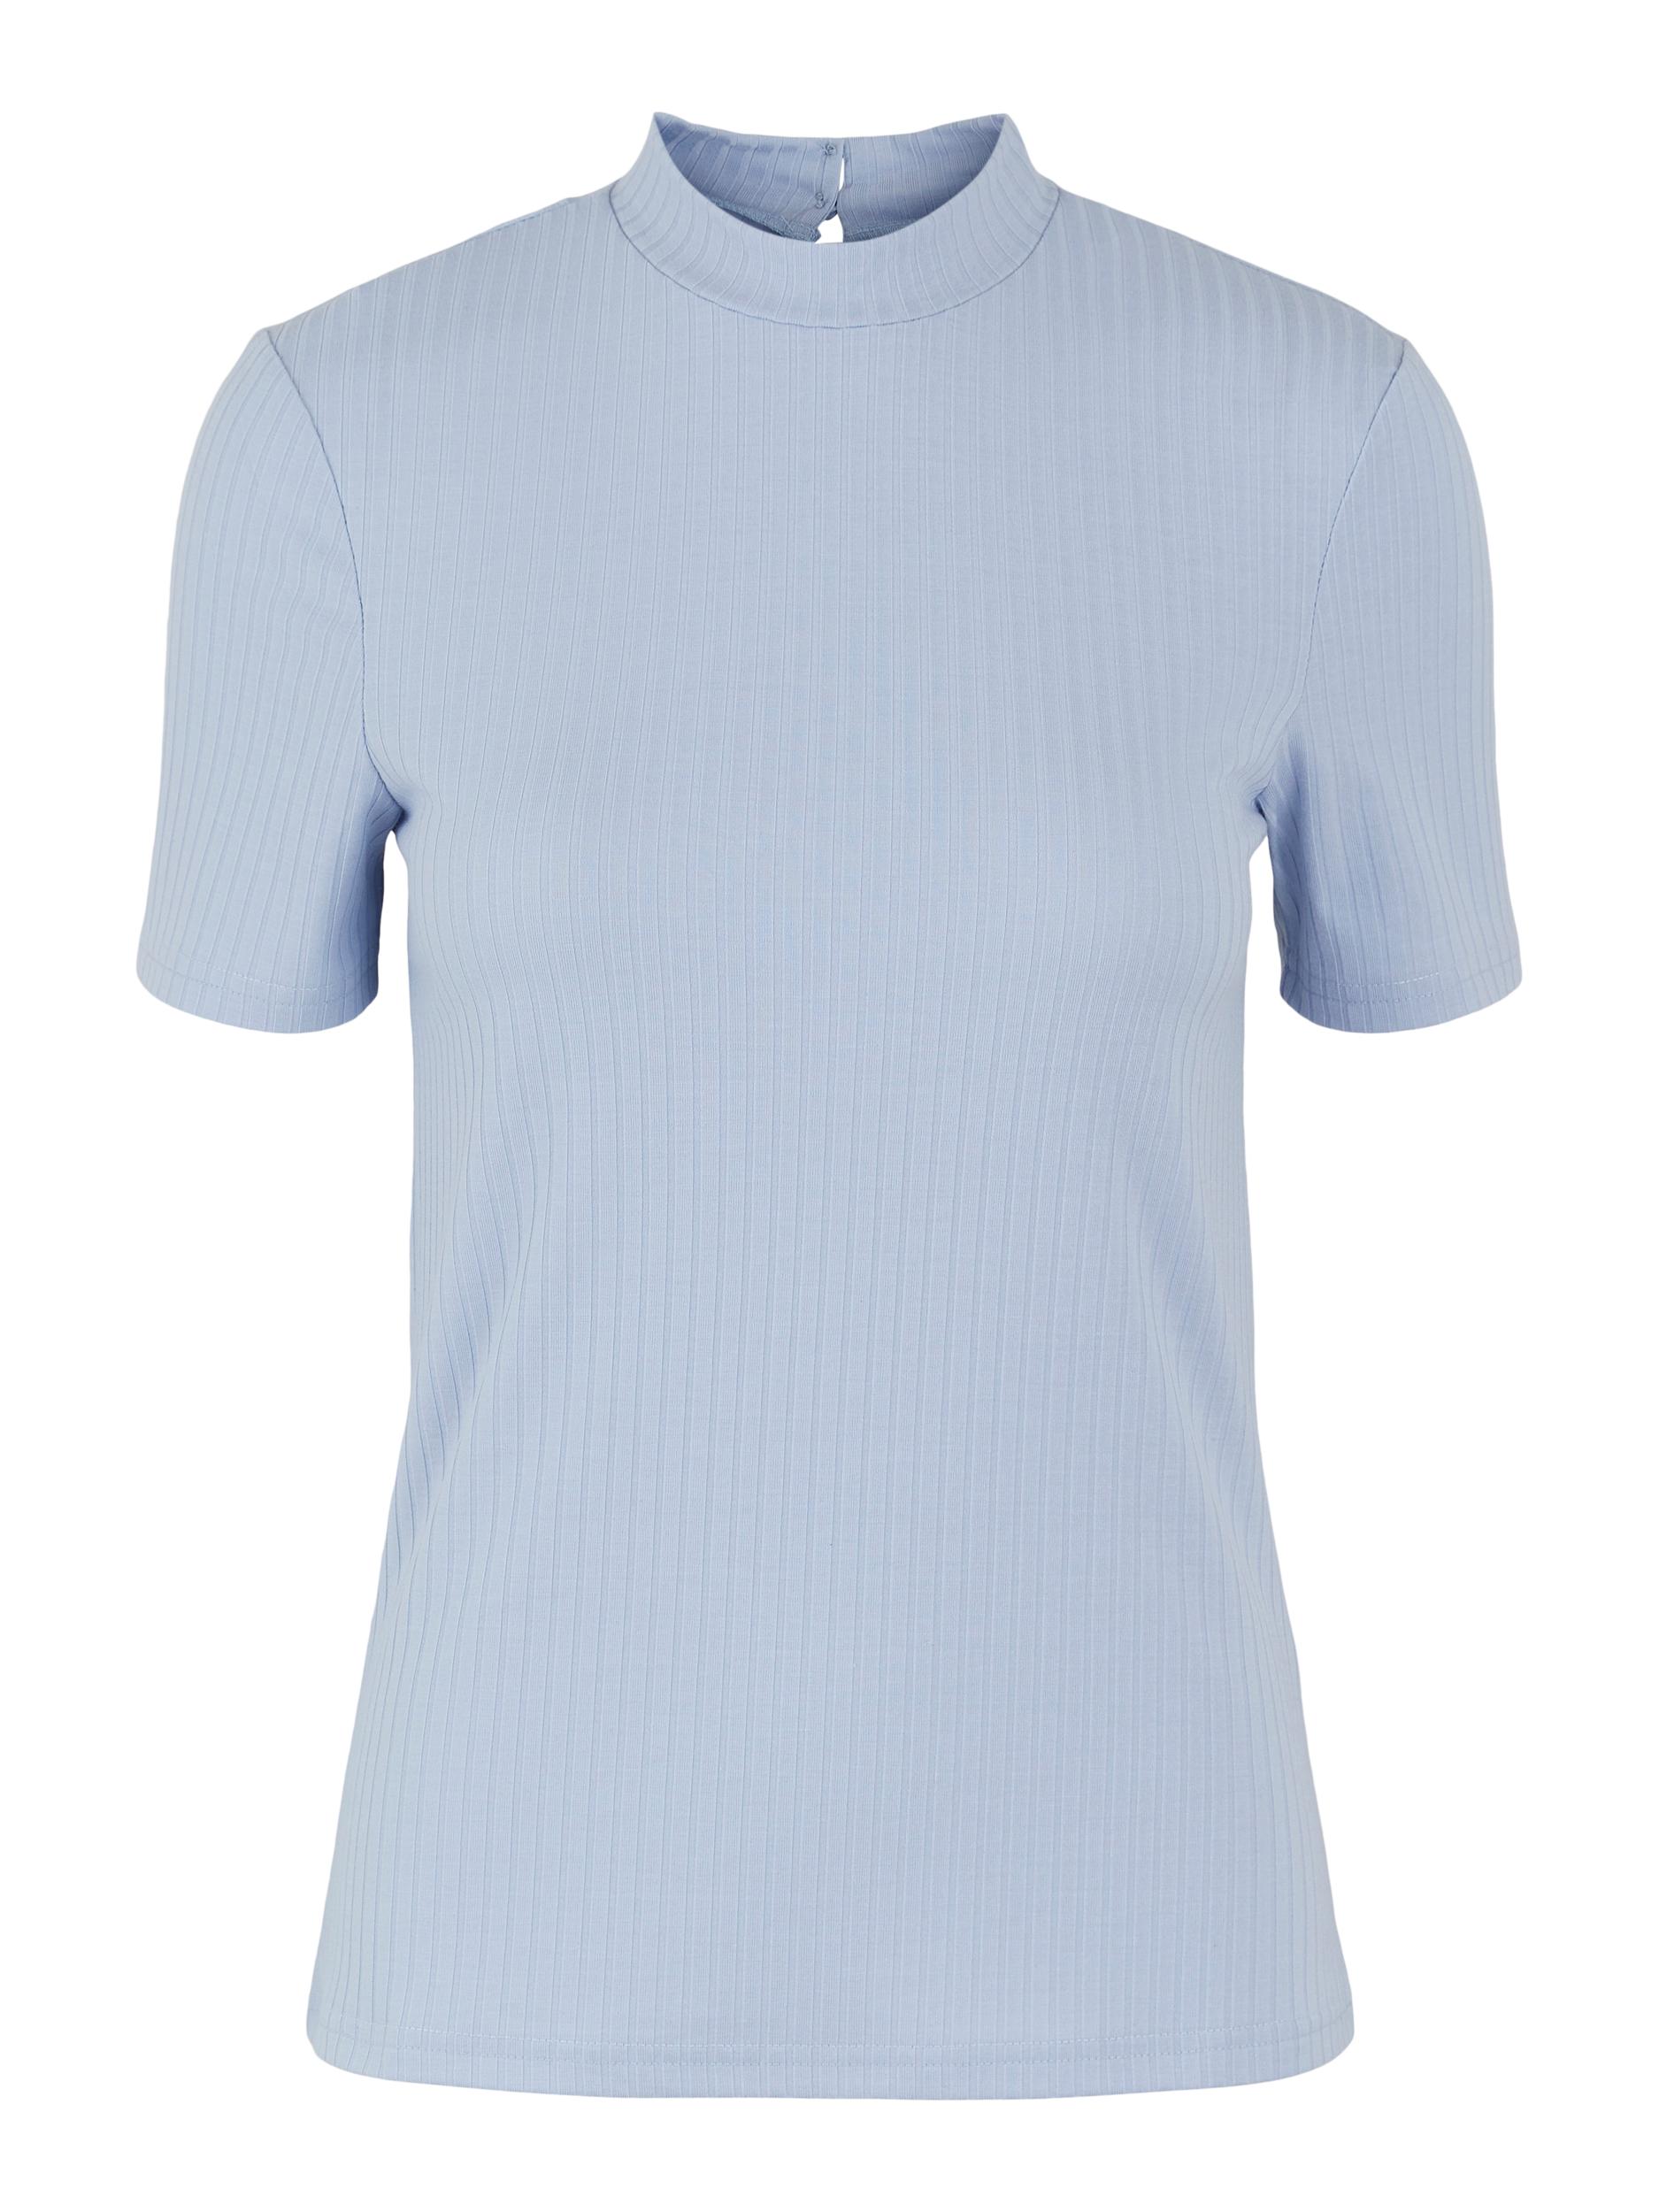 Odzież CNhh0 PIECES Koszulka Kylie w kolorze Błękitnym 